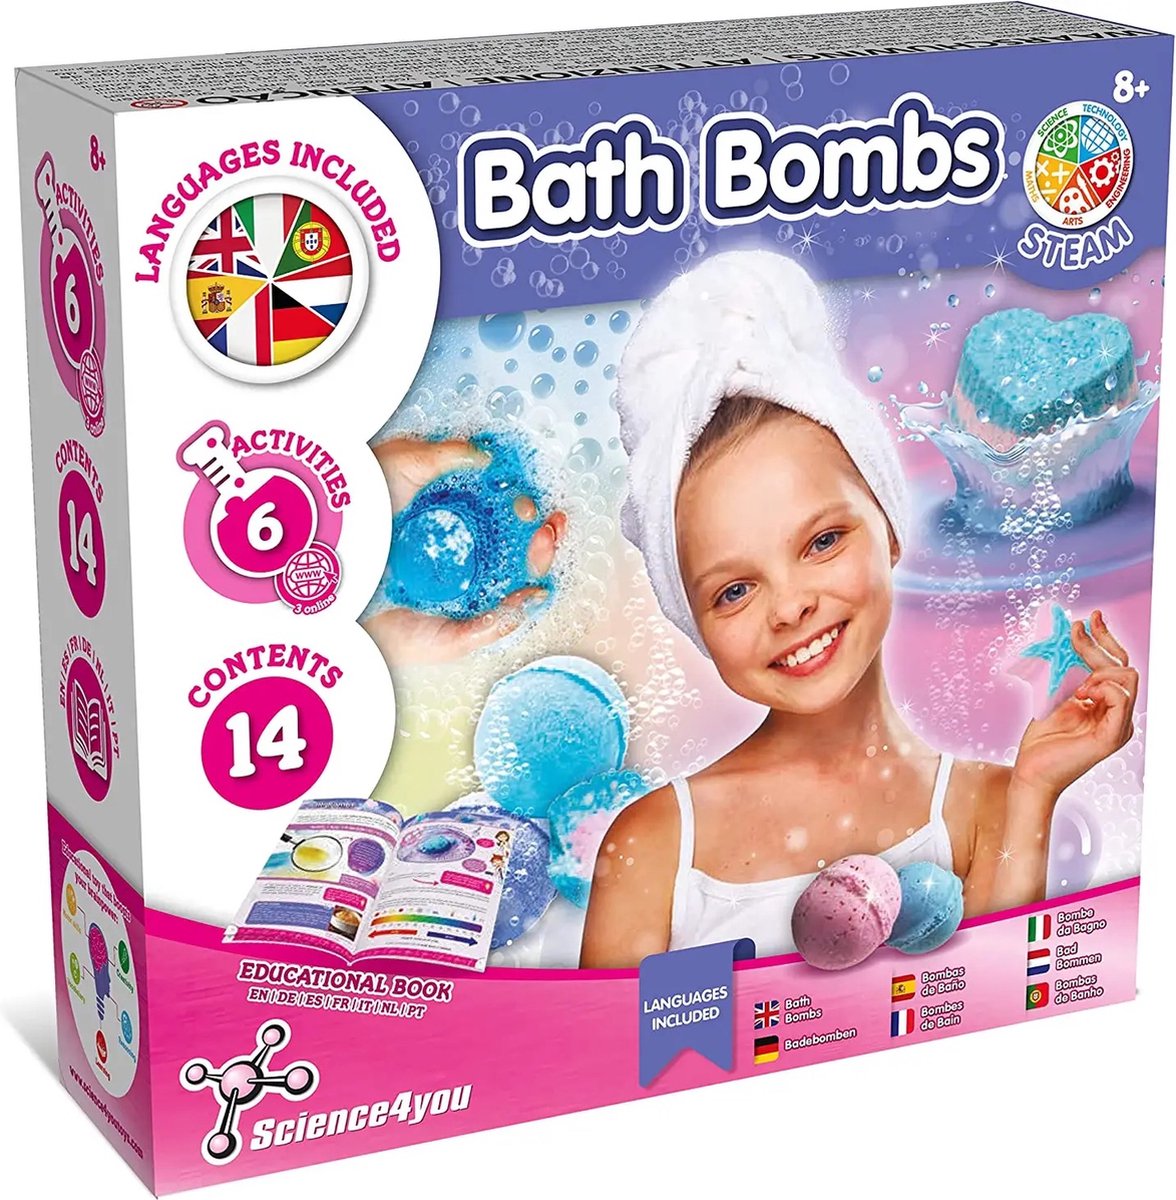 Bath Bombs - Made in Portugal - bruisballen set - leerzame set - Perfect cadeau - cadeau idee - Science Toys for Kids (in 7 languages) - Science Speelgoed voor kinderen - experimenteerdozen - leerzame spellen - breinbrekers - educatieve speelgoed